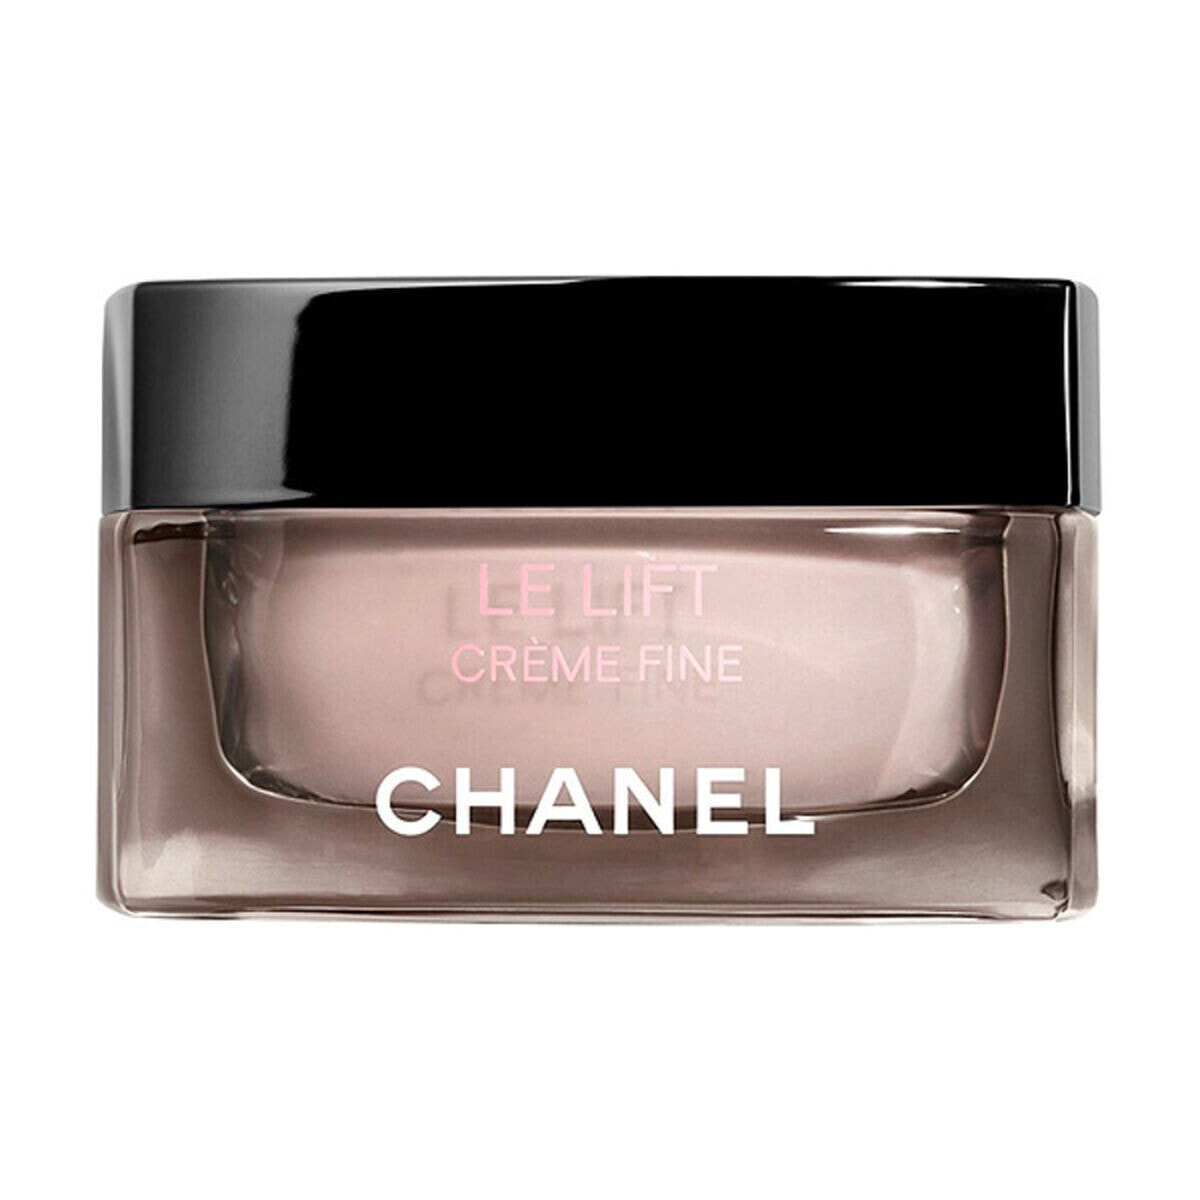 Chanel Le lift Creme Fine Крем для разглаживания и повышения упругости кожи лица и шеи, легкая текстура 50 мл